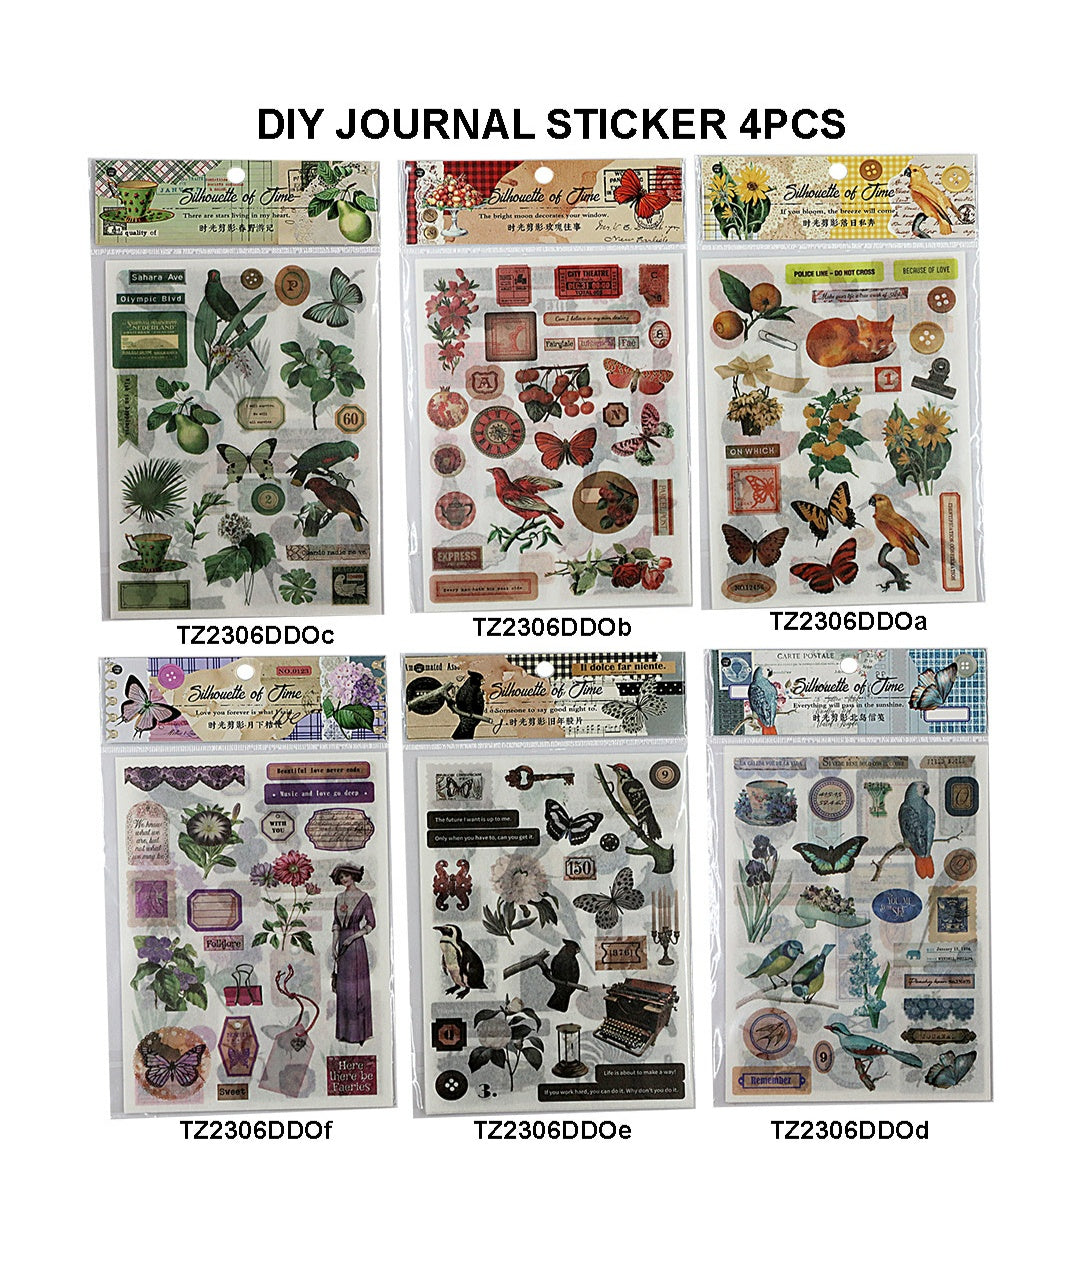 Diy Journal Sticker 4Pcs 305 Tz2306Ddo | INKARTO